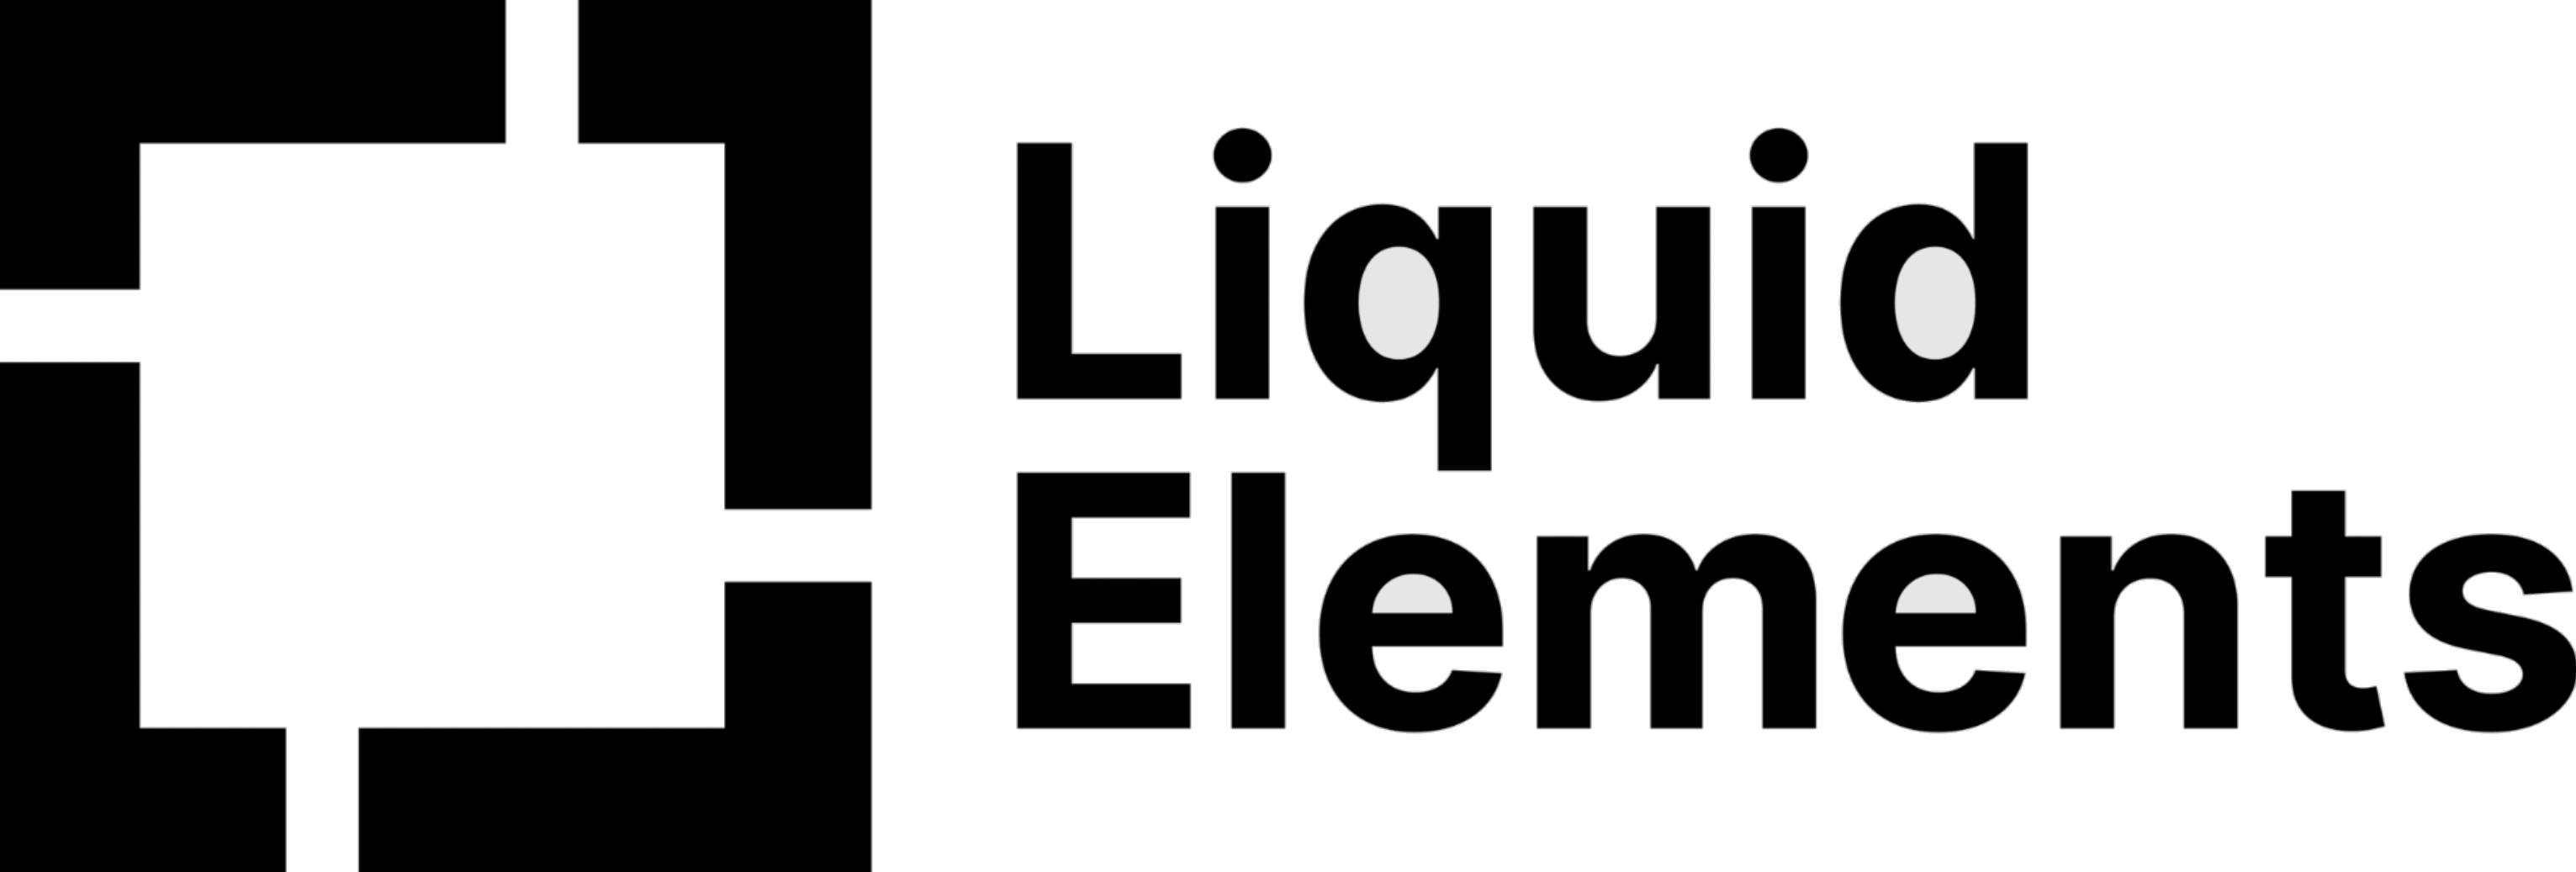 Leštící kotouče Liquid Elements